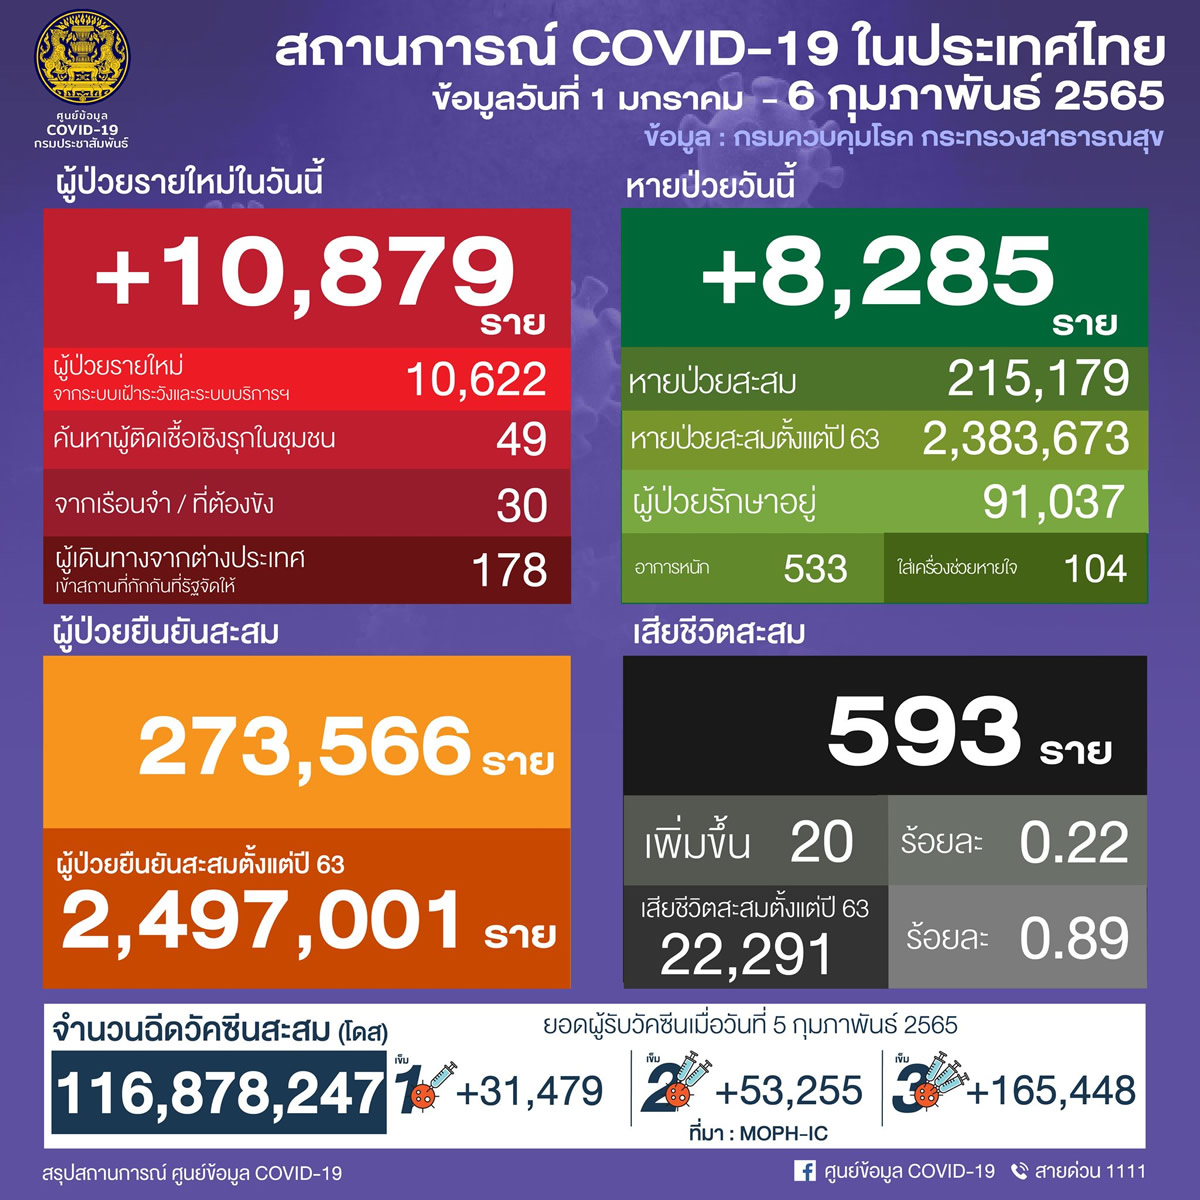 タイ 10,879人陽性 20人死亡／バンコク 1,470人陽性／サムットプラカン 1,282人陽性／チョンブリ 556人陽性［2022年2月6日発表］